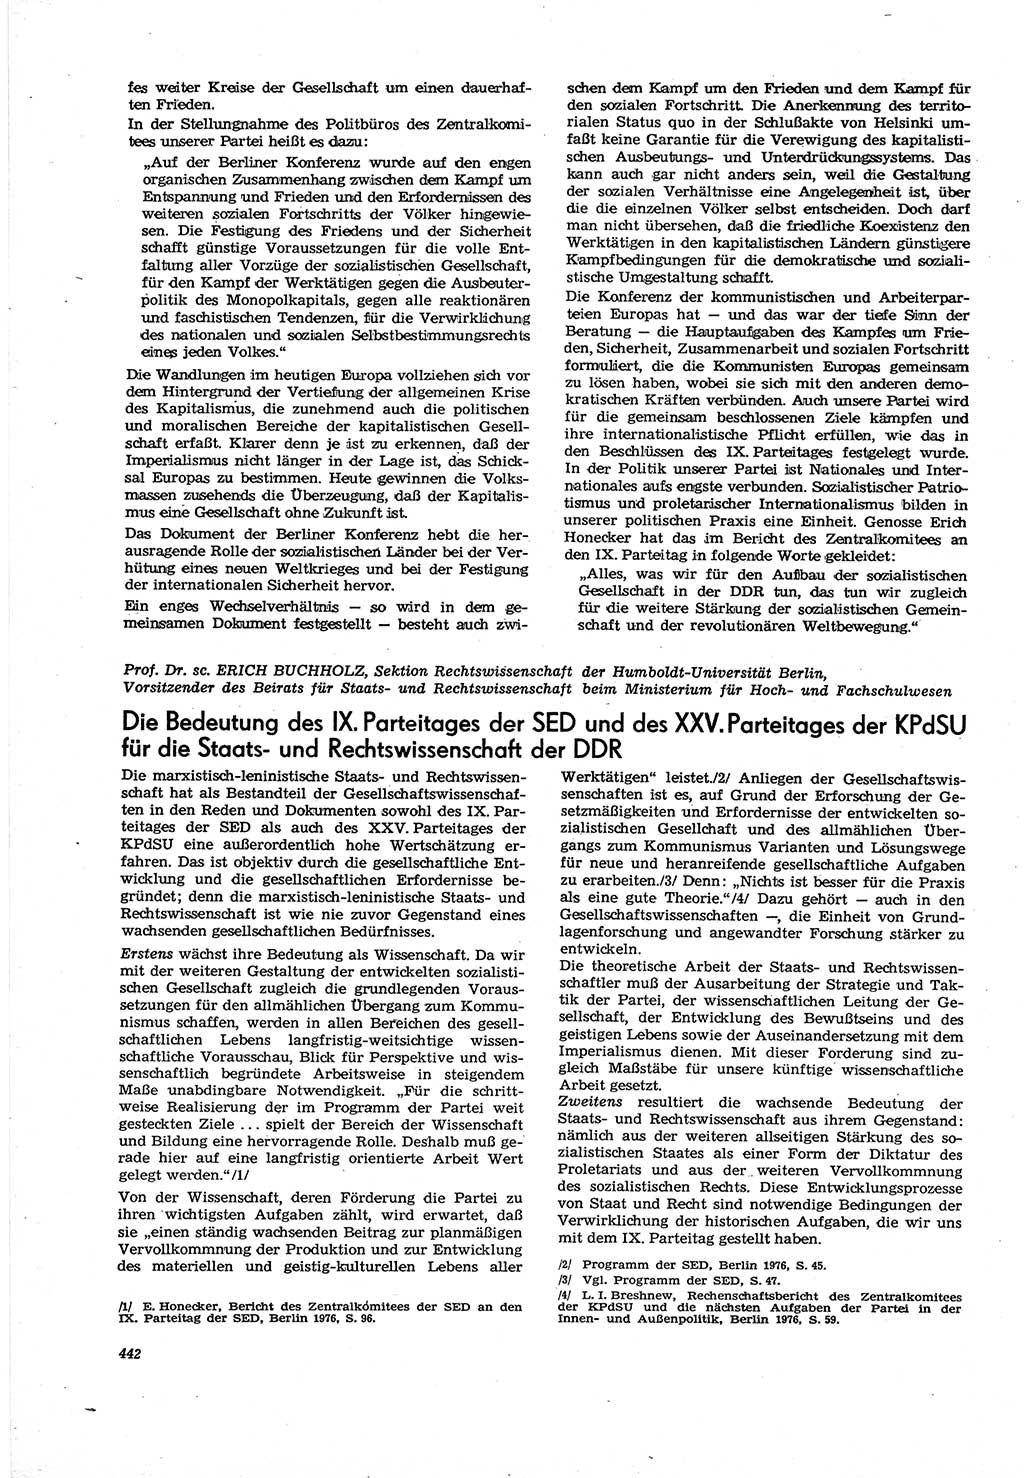 Neue Justiz (NJ), Zeitschrift für Recht und Rechtswissenschaft [Deutsche Demokratische Republik (DDR)], 30. Jahrgang 1976, Seite 442 (NJ DDR 1976, S. 442)